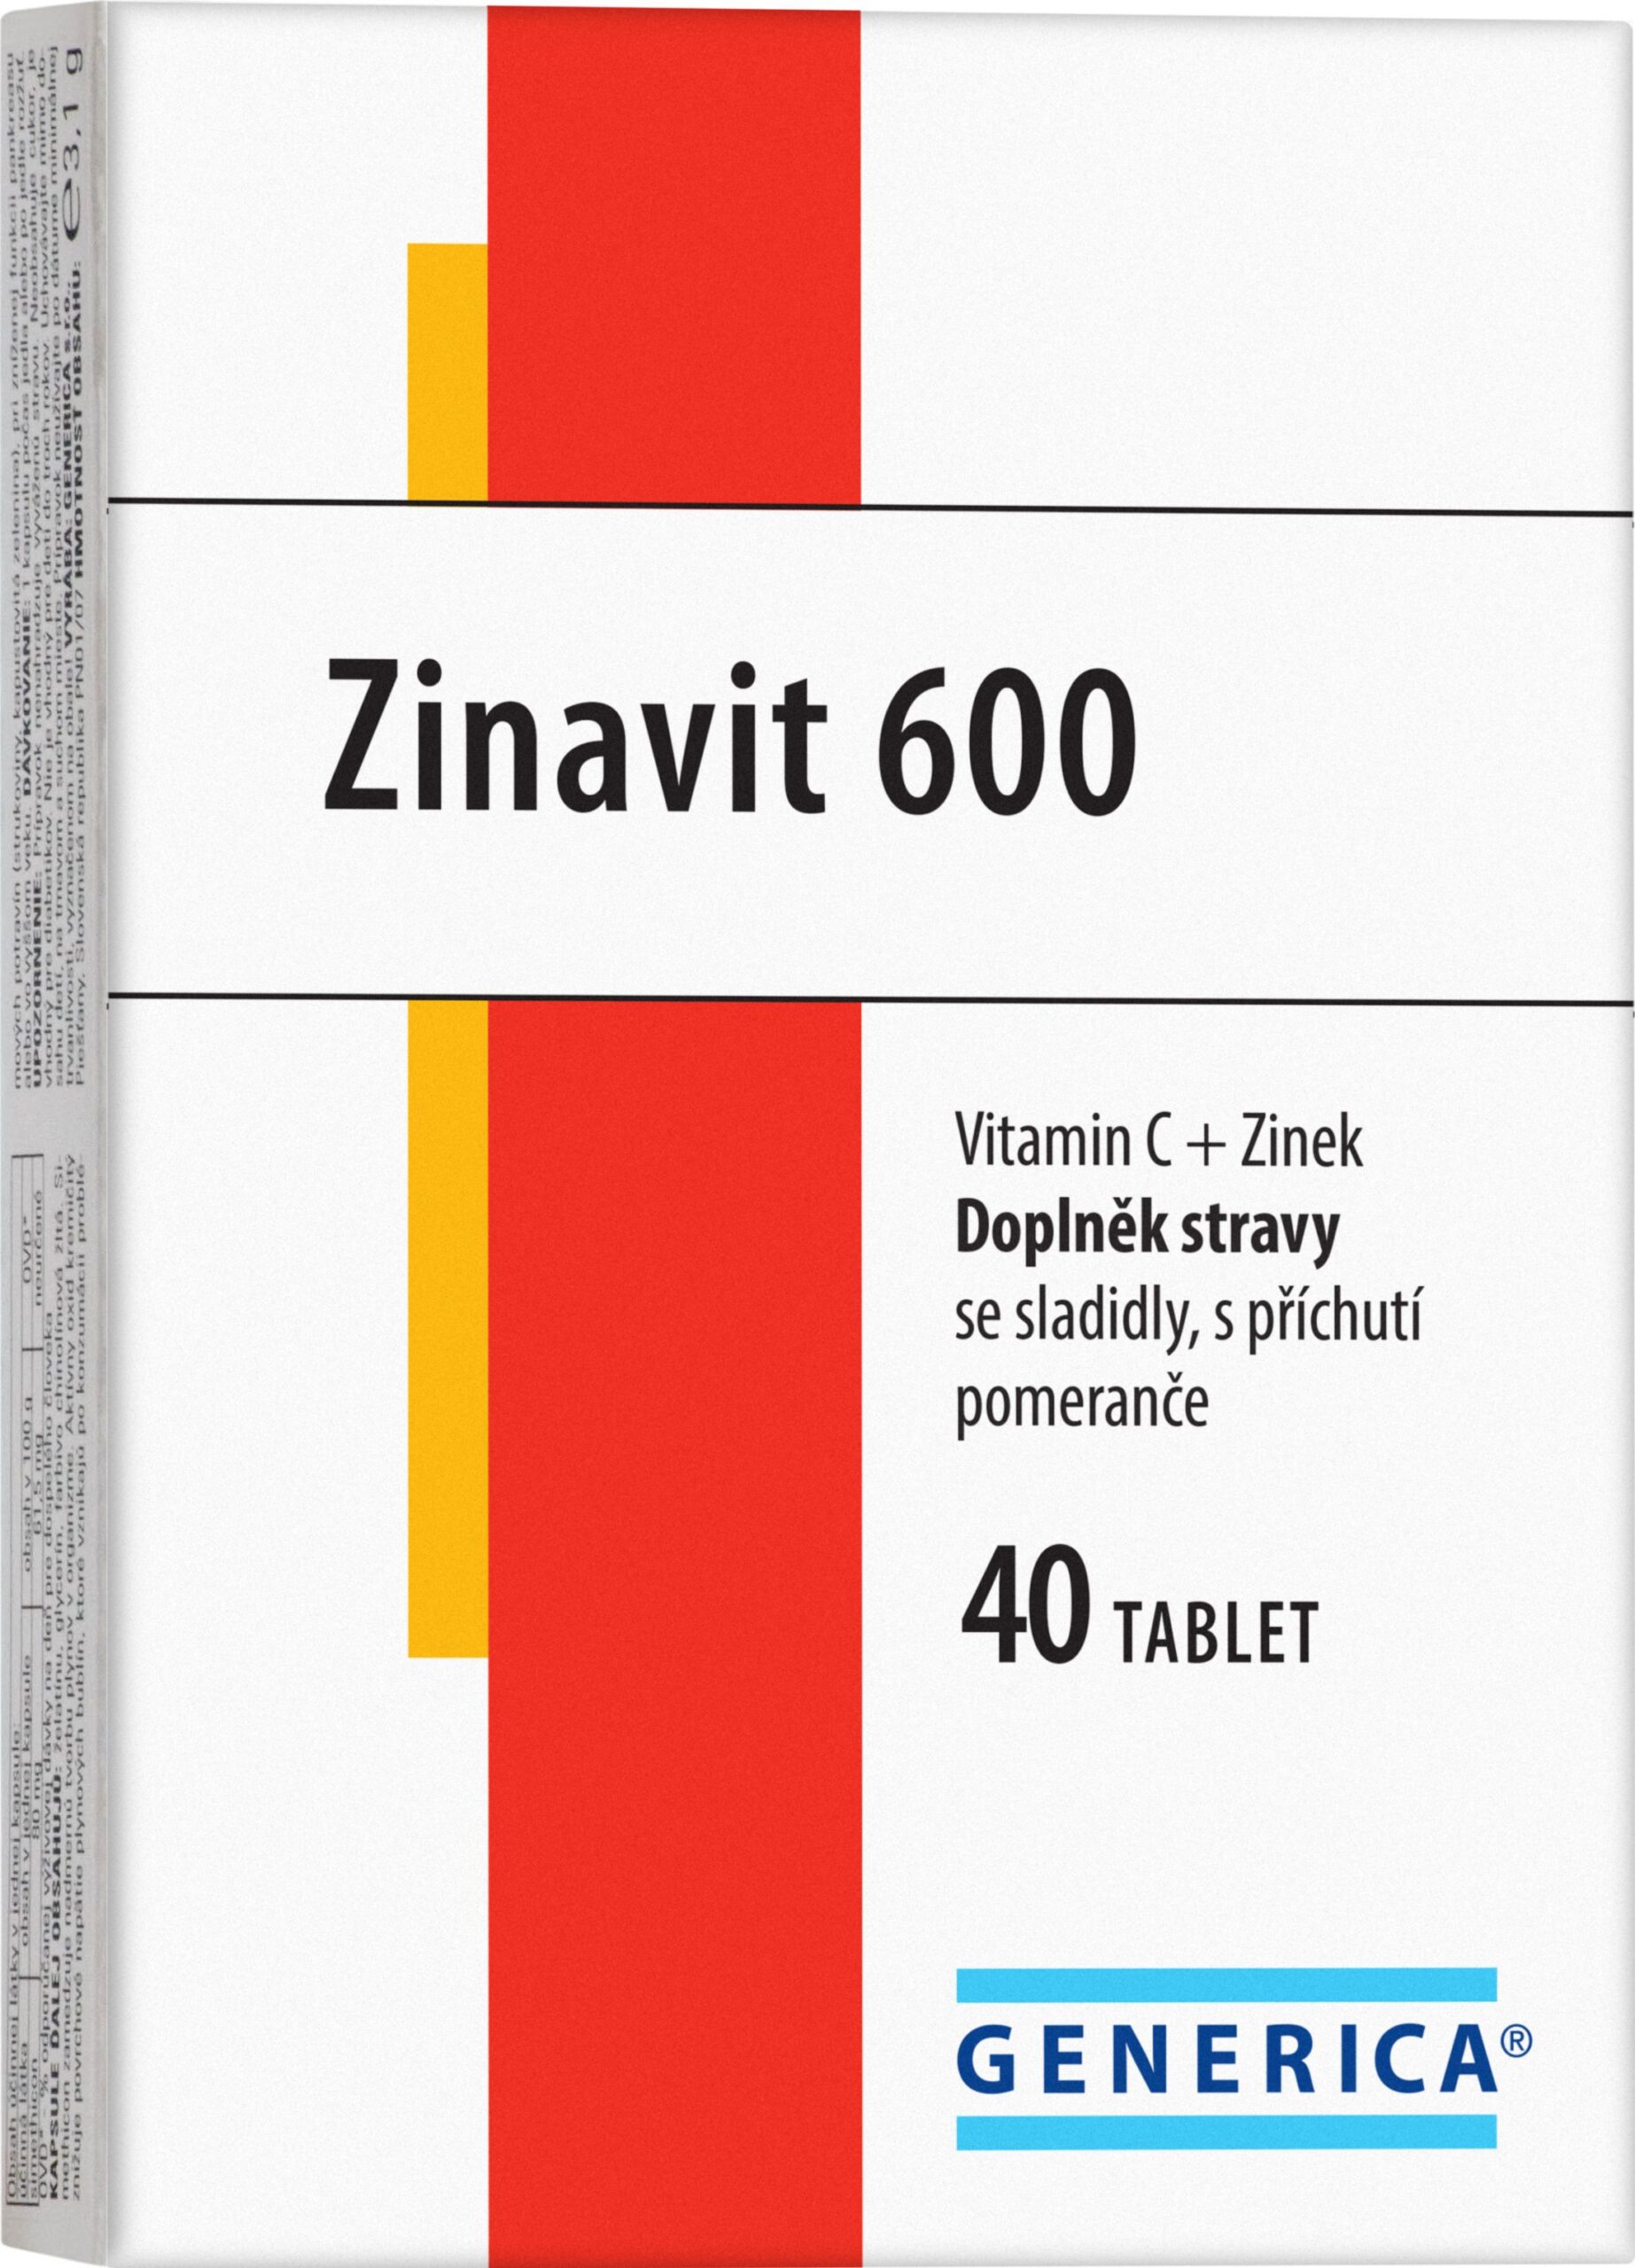 Generica Zinavit 600 40 cucavých tablet Generica